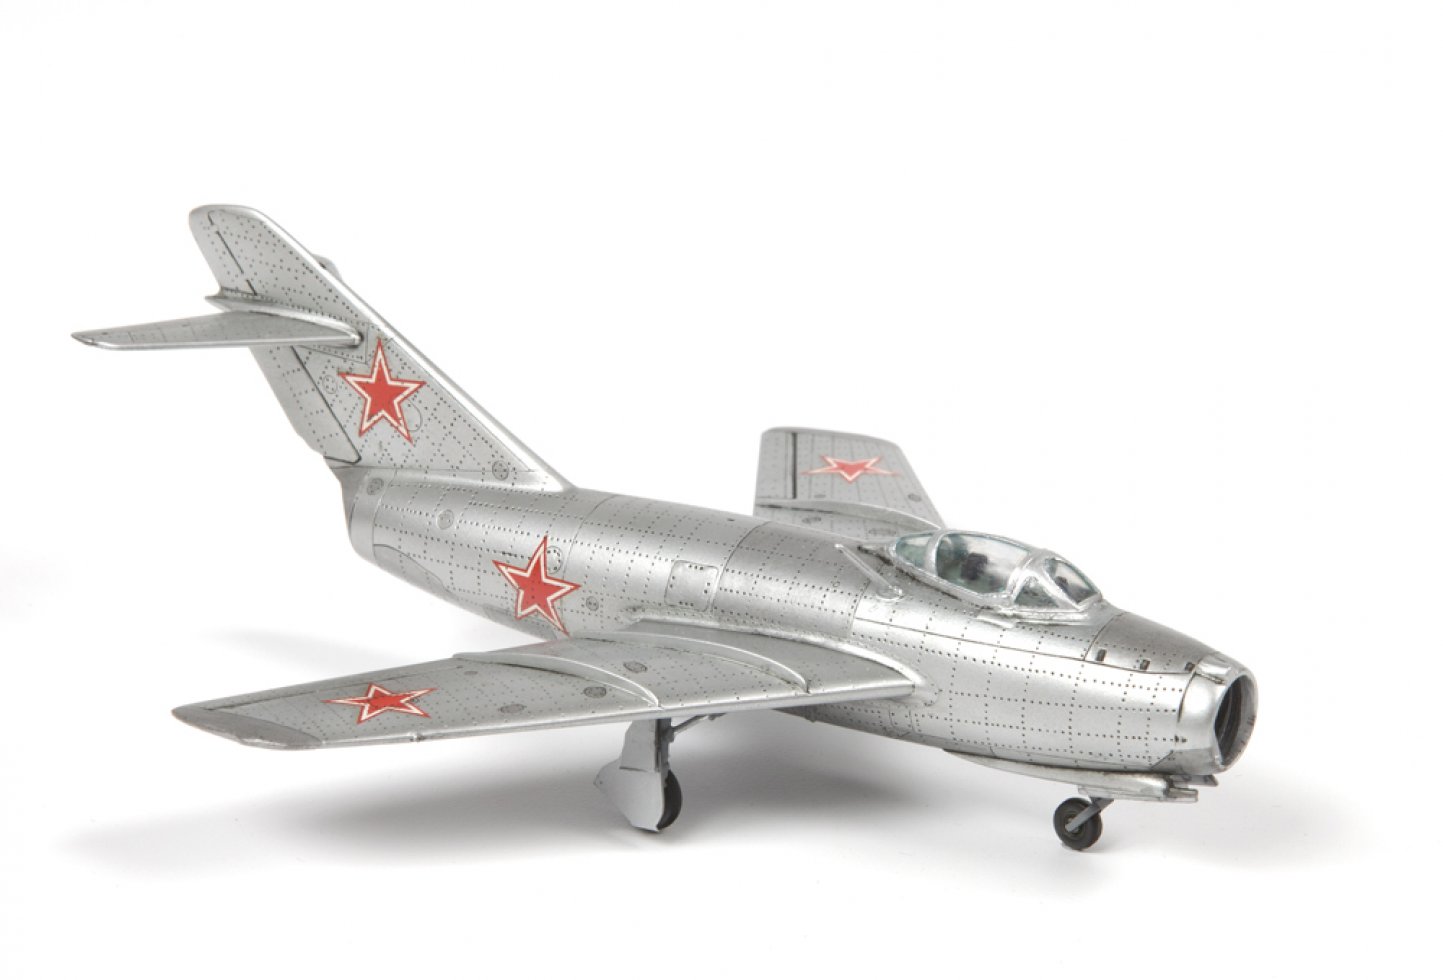 Сборная модель Советский истребитель МиГ-15, производитель «Звезда», масштаб 1:72, артикул 7317 # 2 hobbyplus.ru